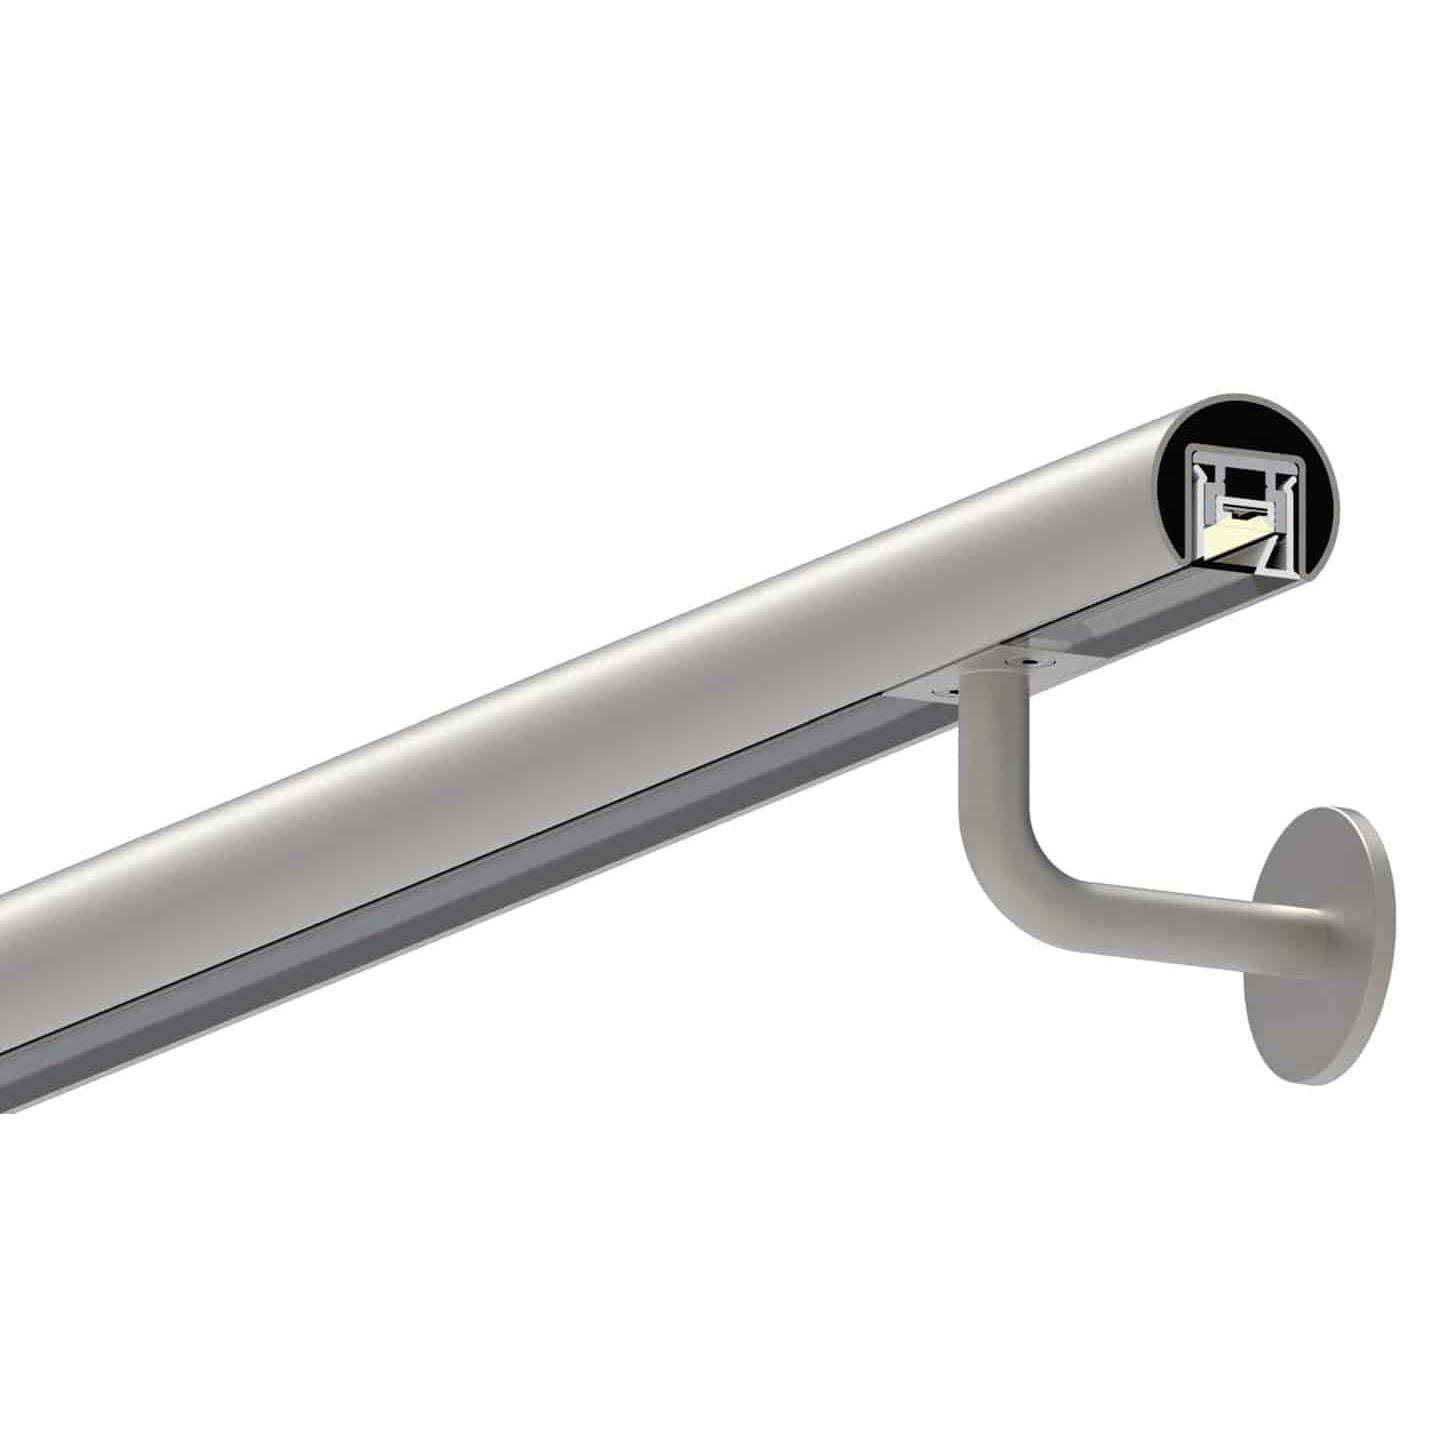 Extrusion Aluminum Handrail Profiles